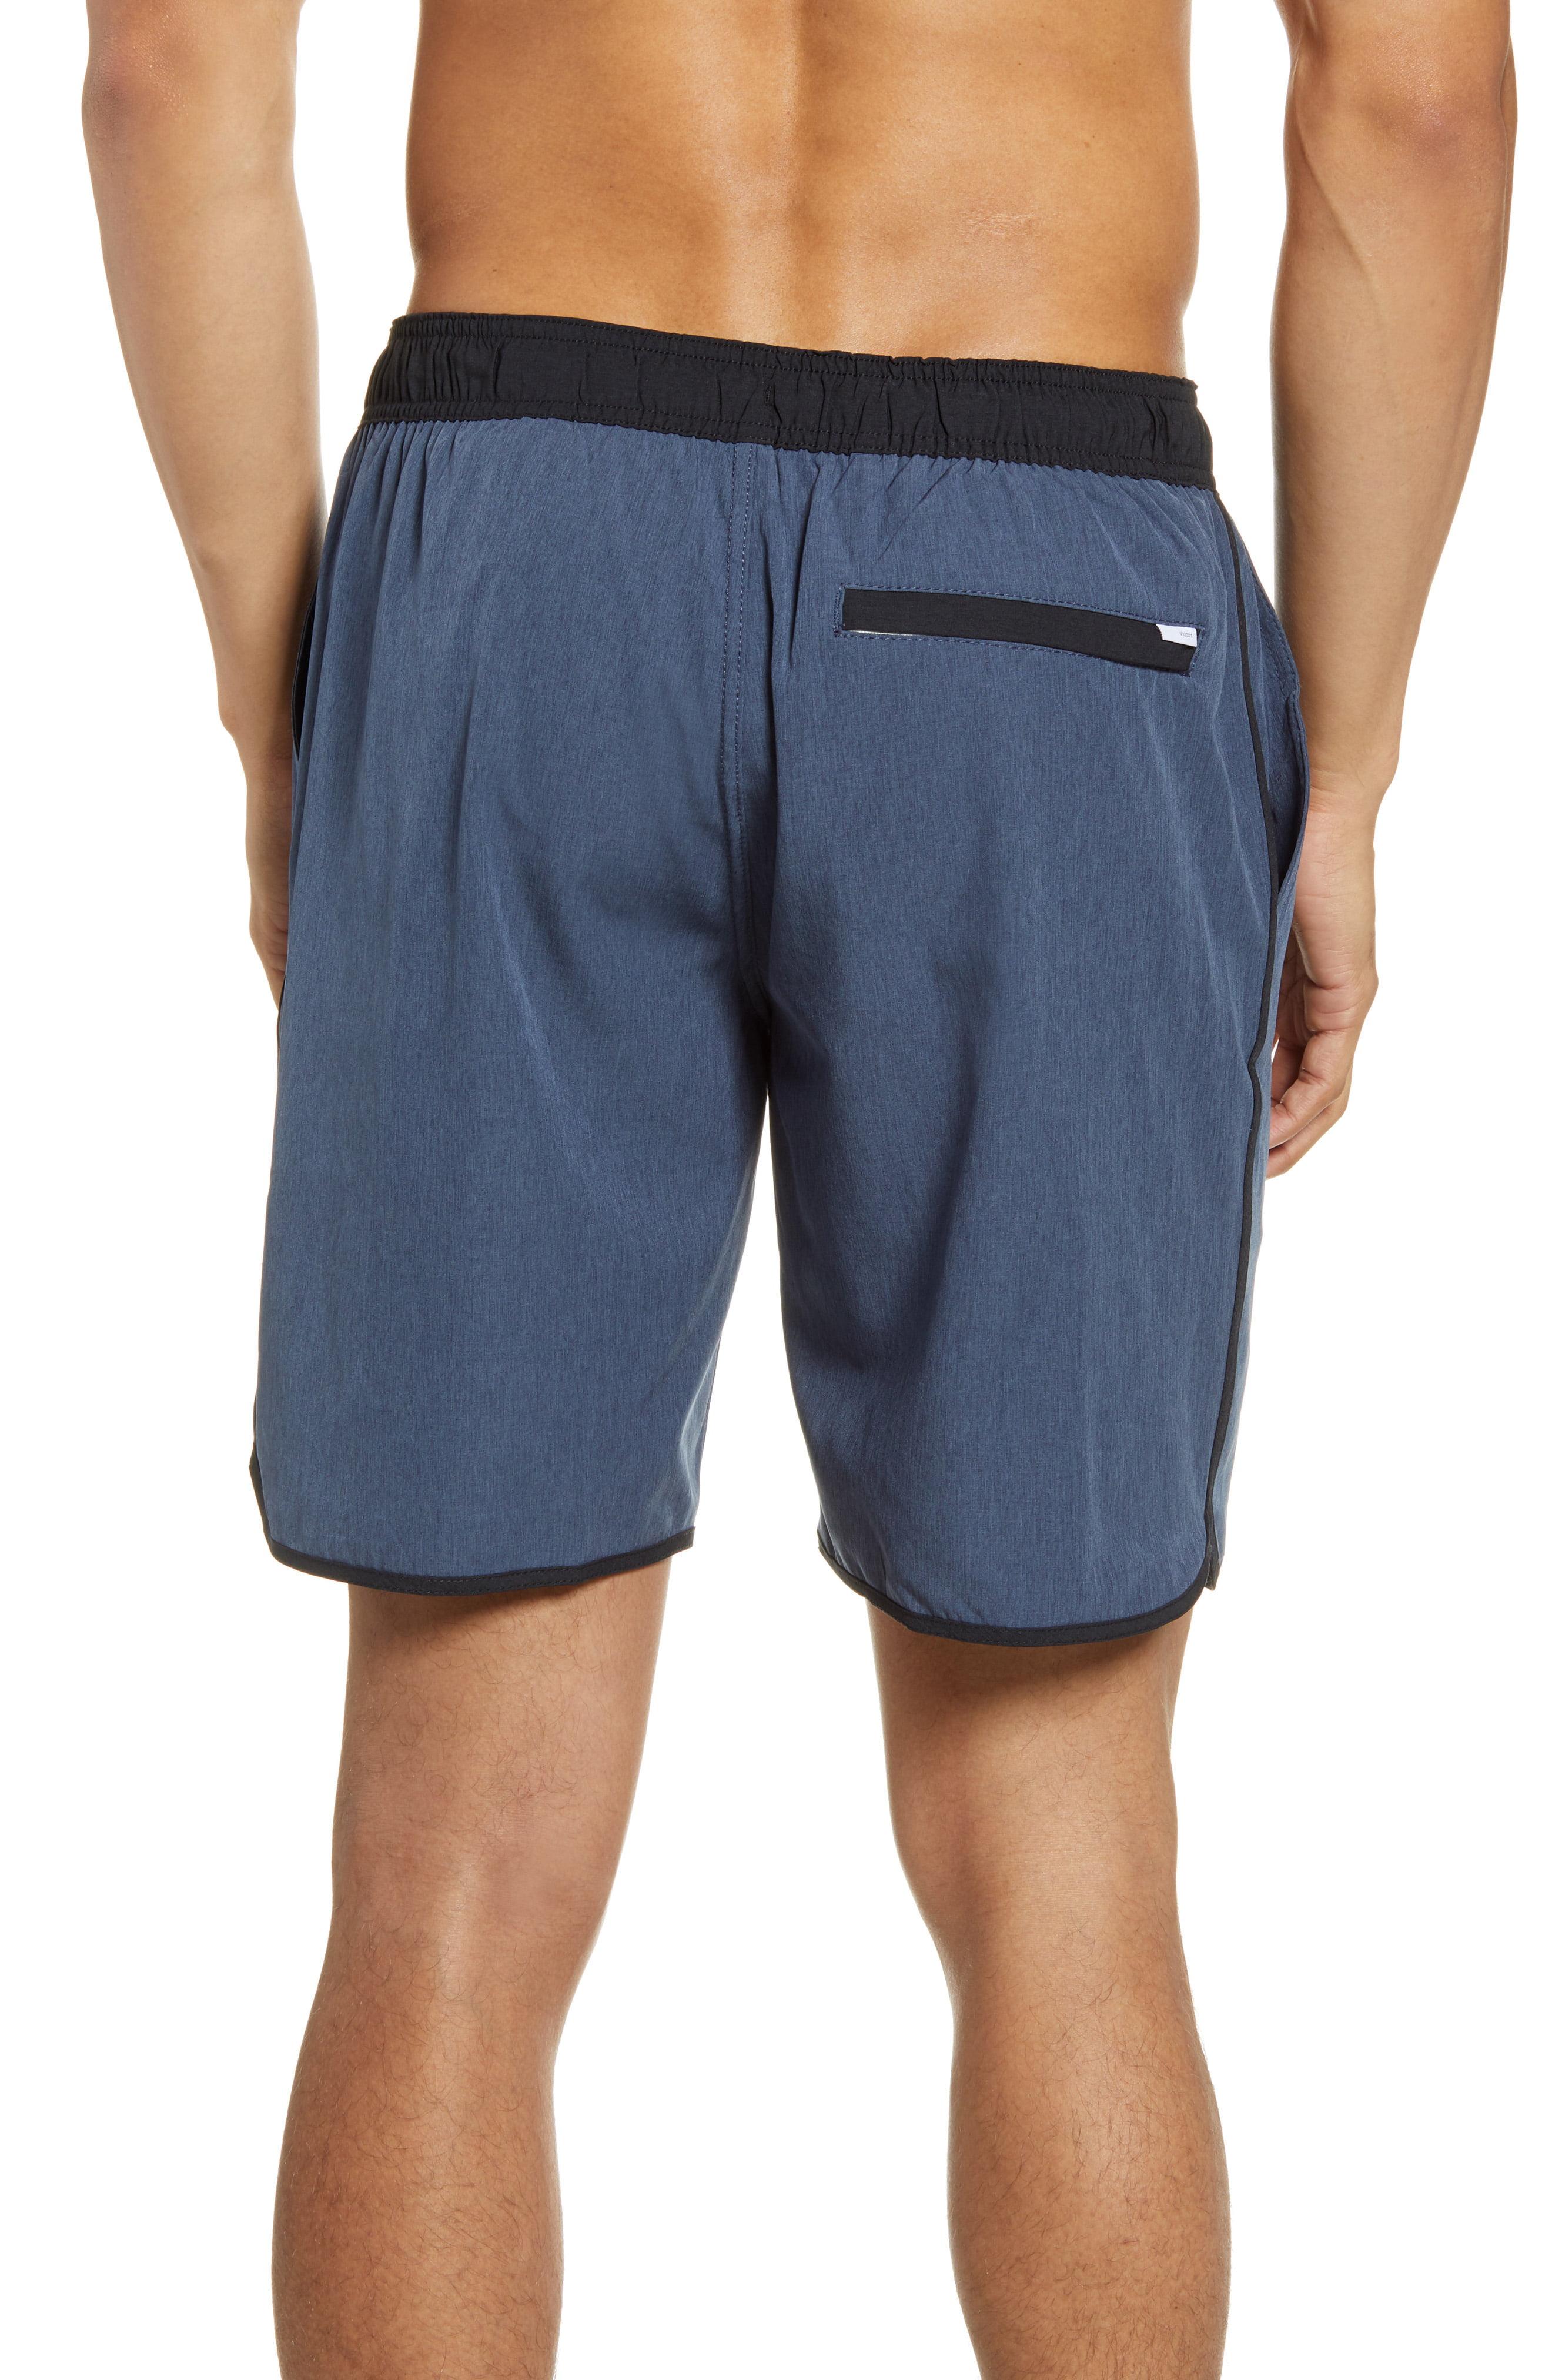 Vuori Banks Hybrid Shorts in Blue for Men - Lyst